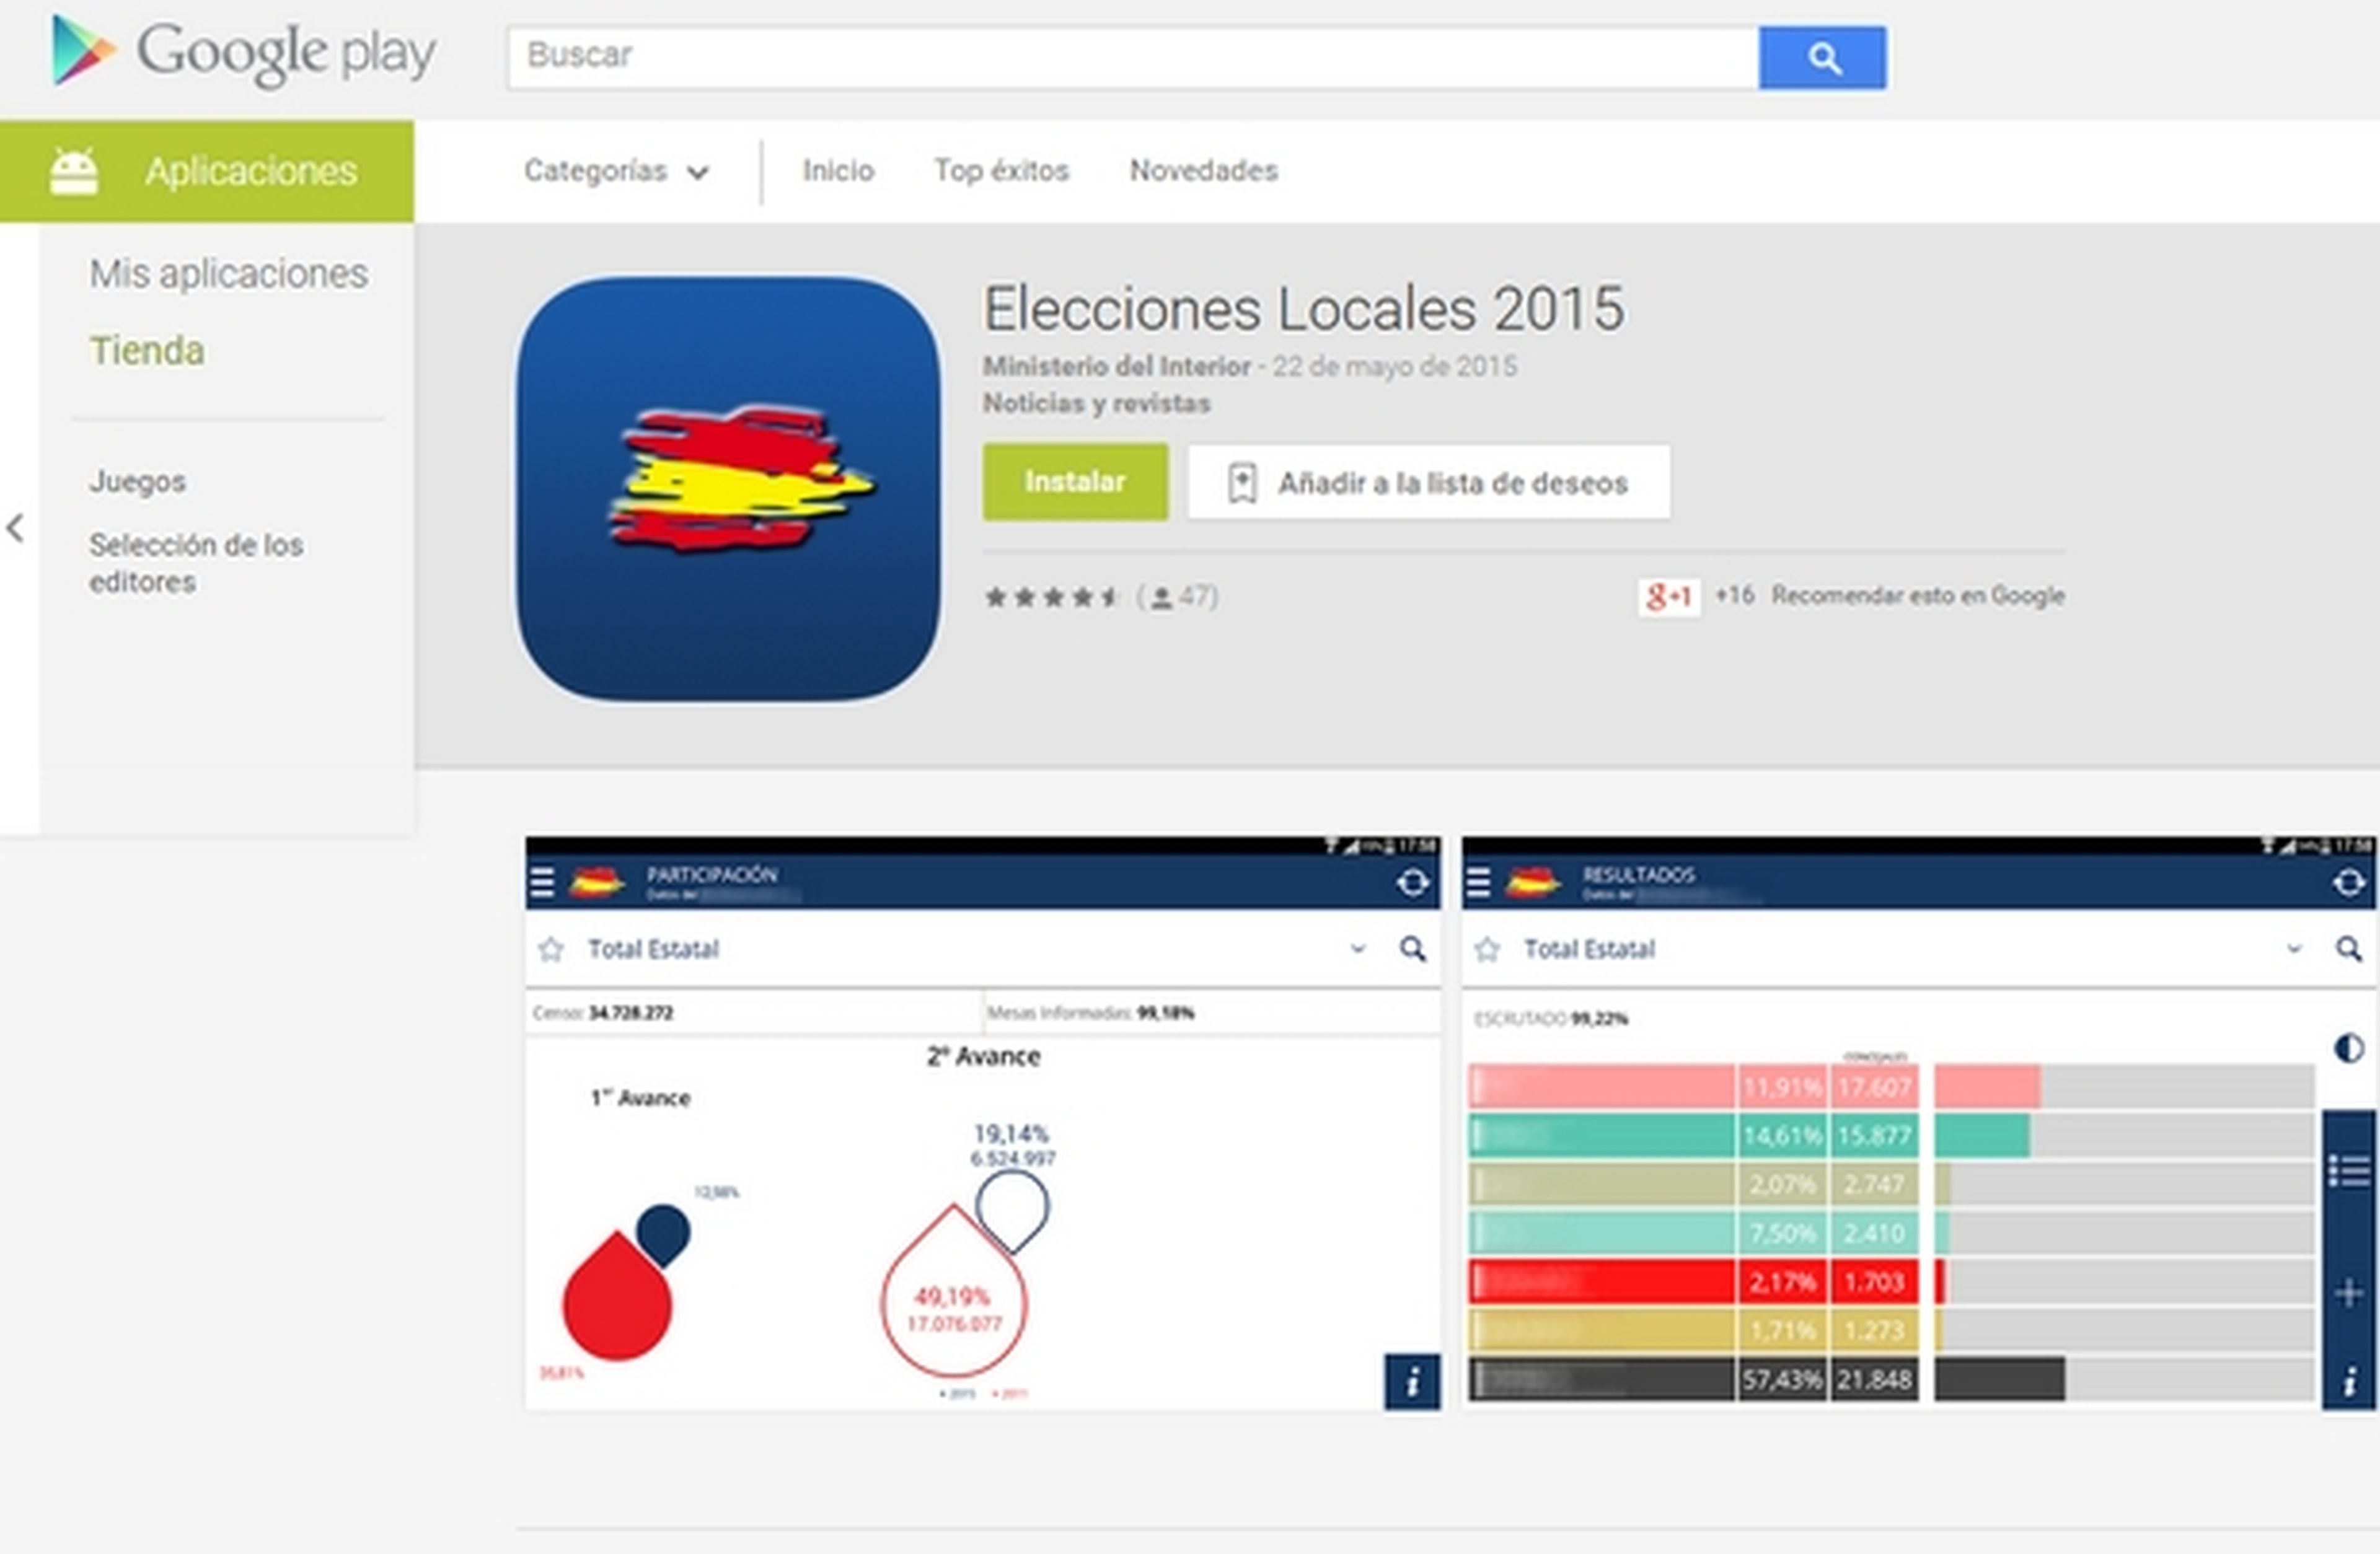 Elecciones locales 2015